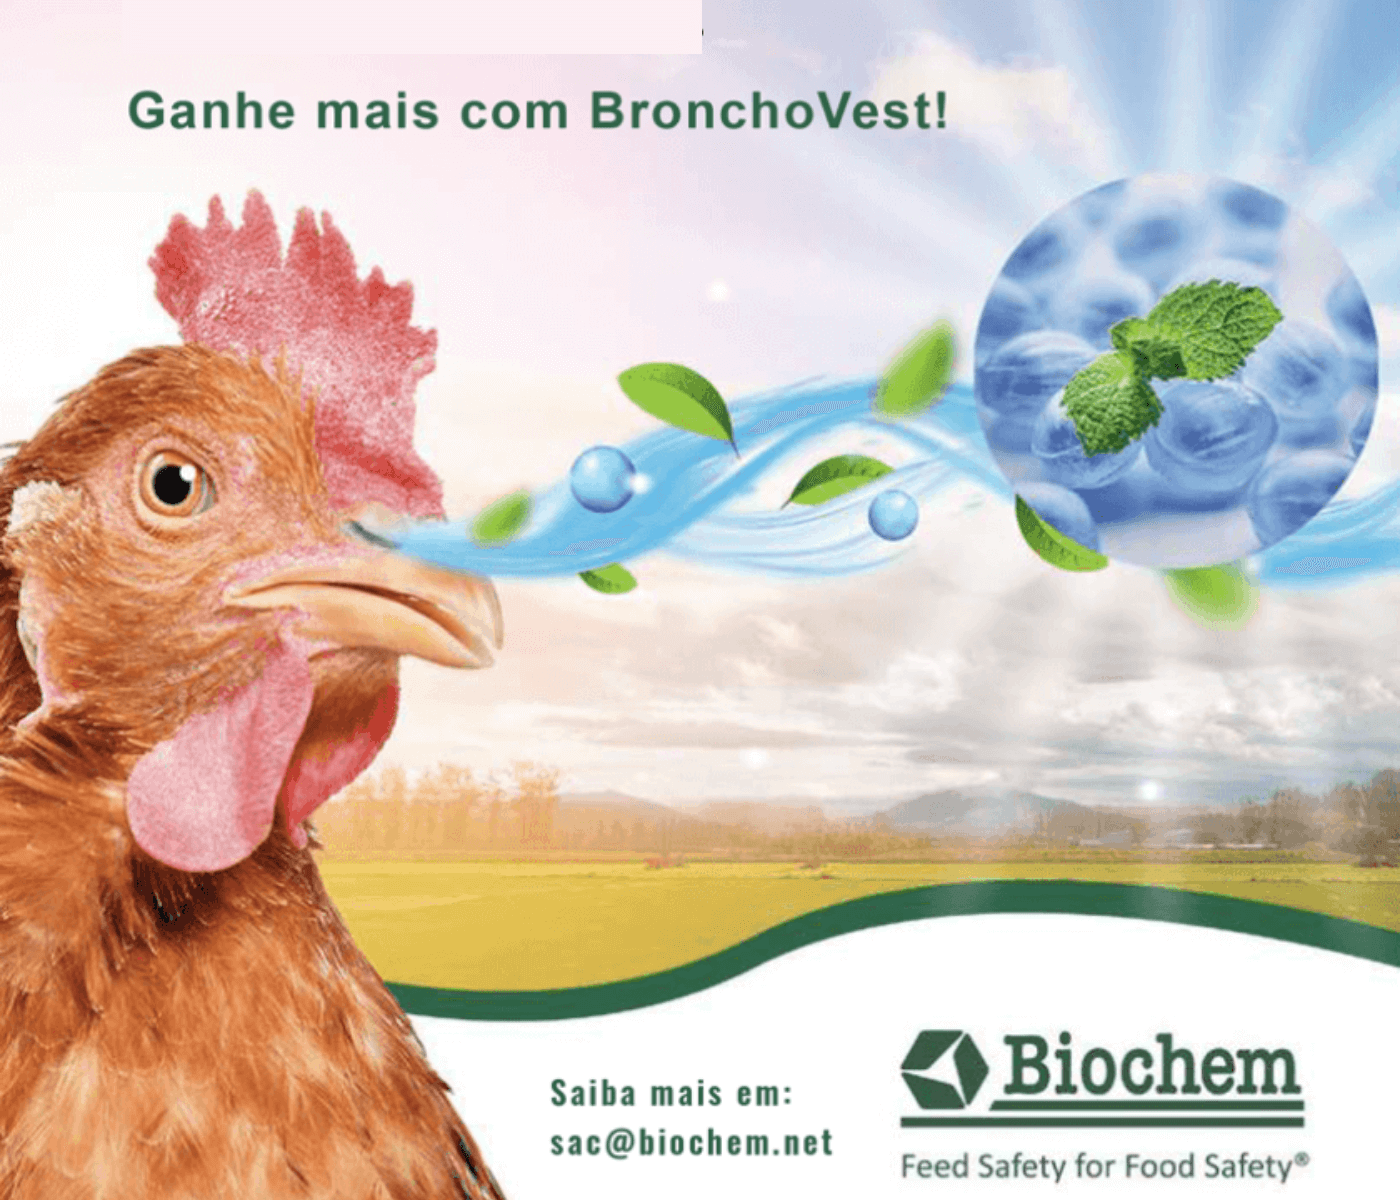 Período de seca: Biochem tem a solução dos problemas respiratórios...